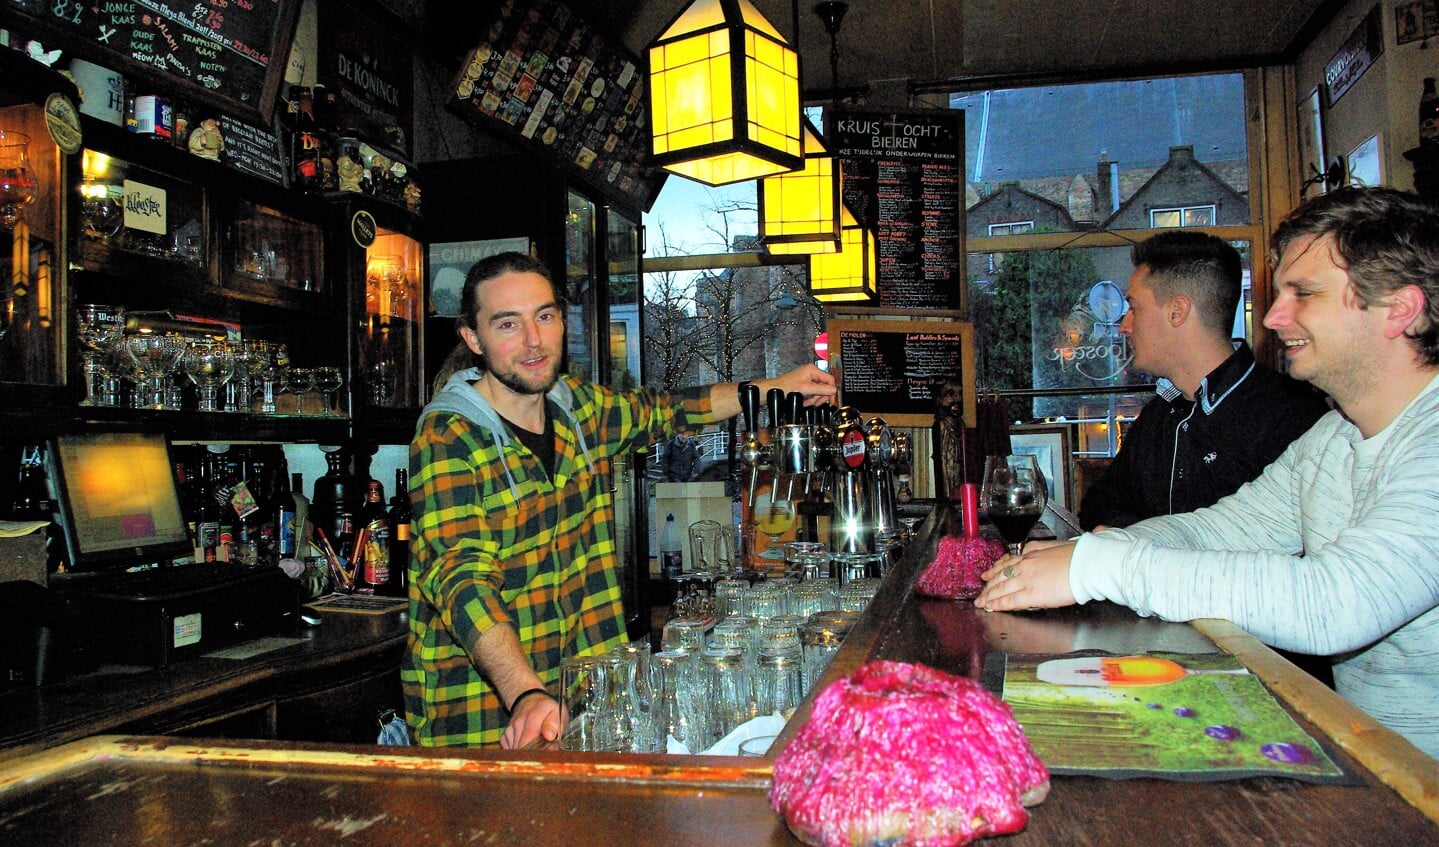 Helmer Dil (links) achter de bar in Trappistenlokaal ’t Klooster, een oud èn ouderwets gezellig bruin café in de historische binnenstad van Delft. (foto: Jesper Neeleman)